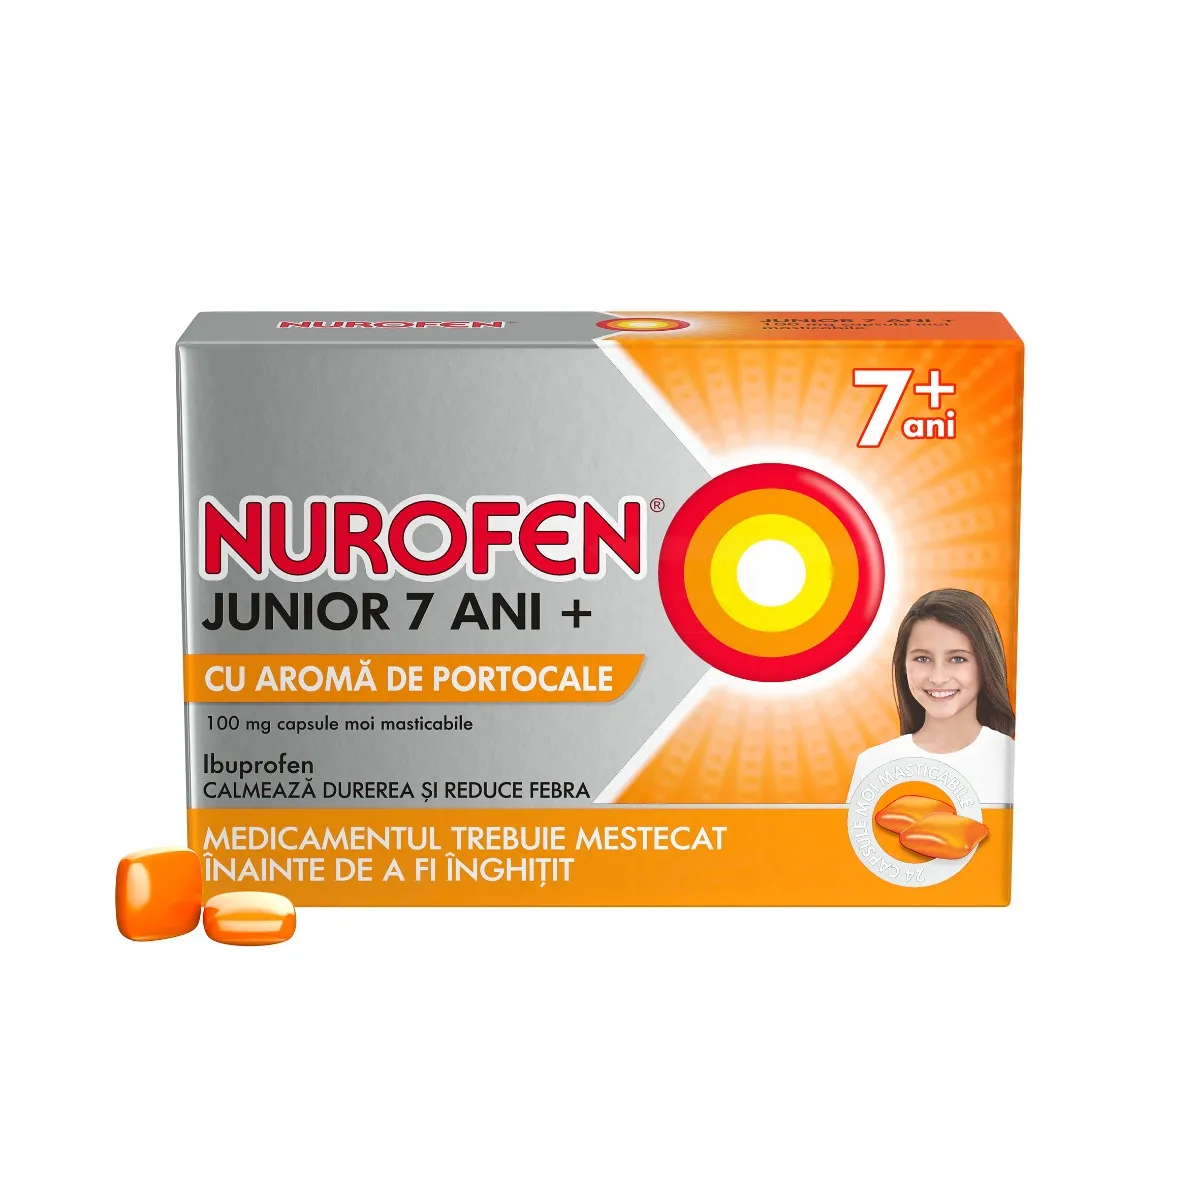 Nurofen Junior 7 ani+ 100 mg cu aroma de portocale, 24 capsule, Reckitt Benckiser